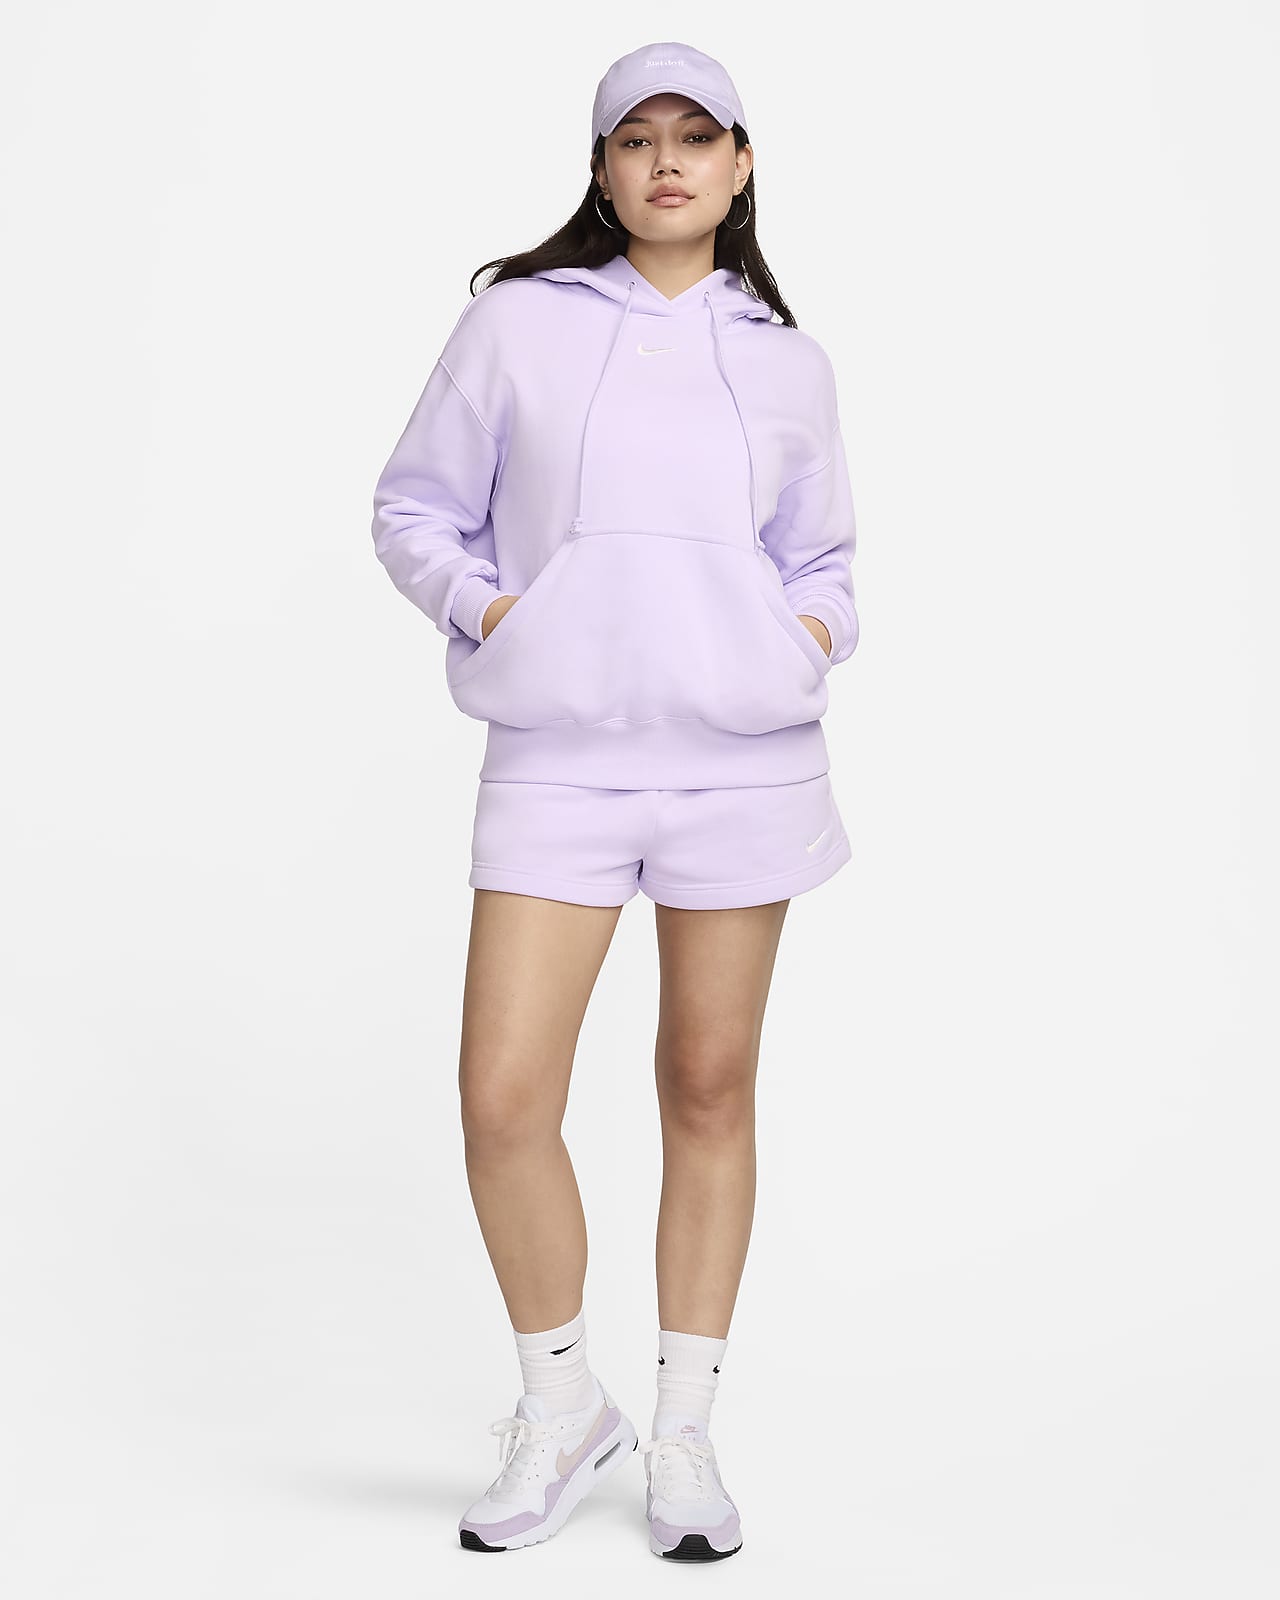 Nike Sportswear Women's Oversized Fleece Pullover Hoodie